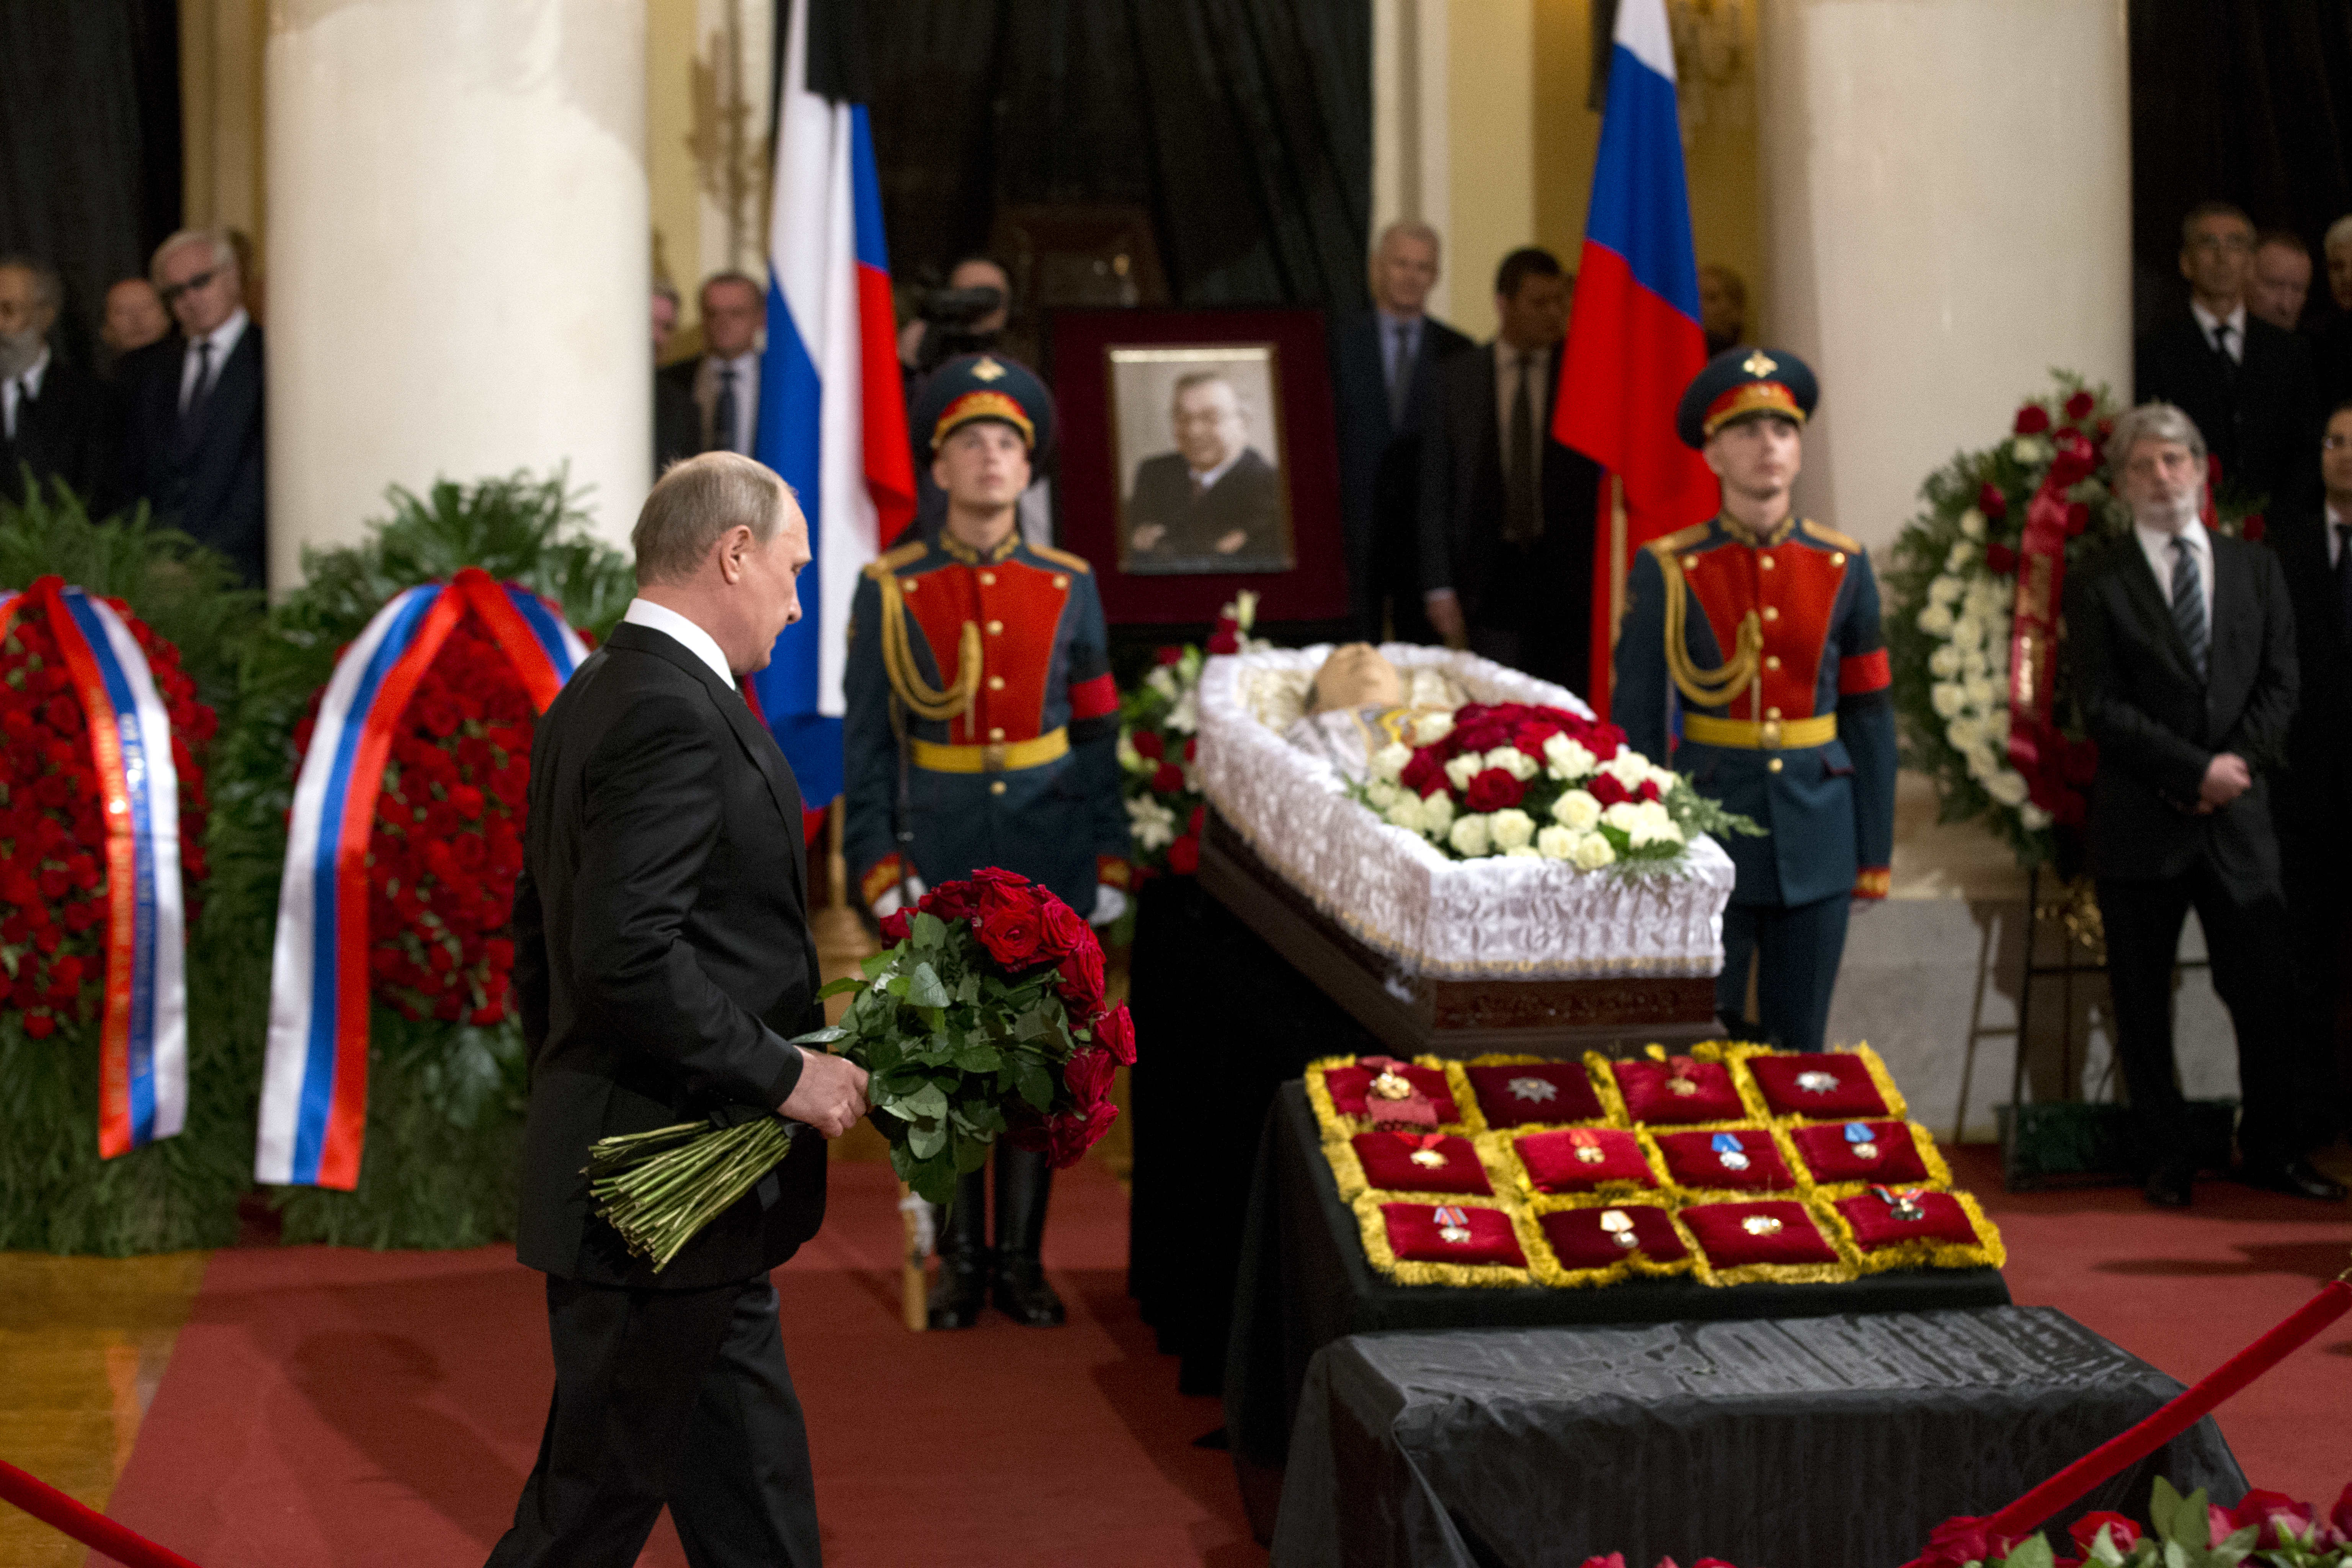 Похорони президента. Почетный караул на похоронах. Похороны Примакова.